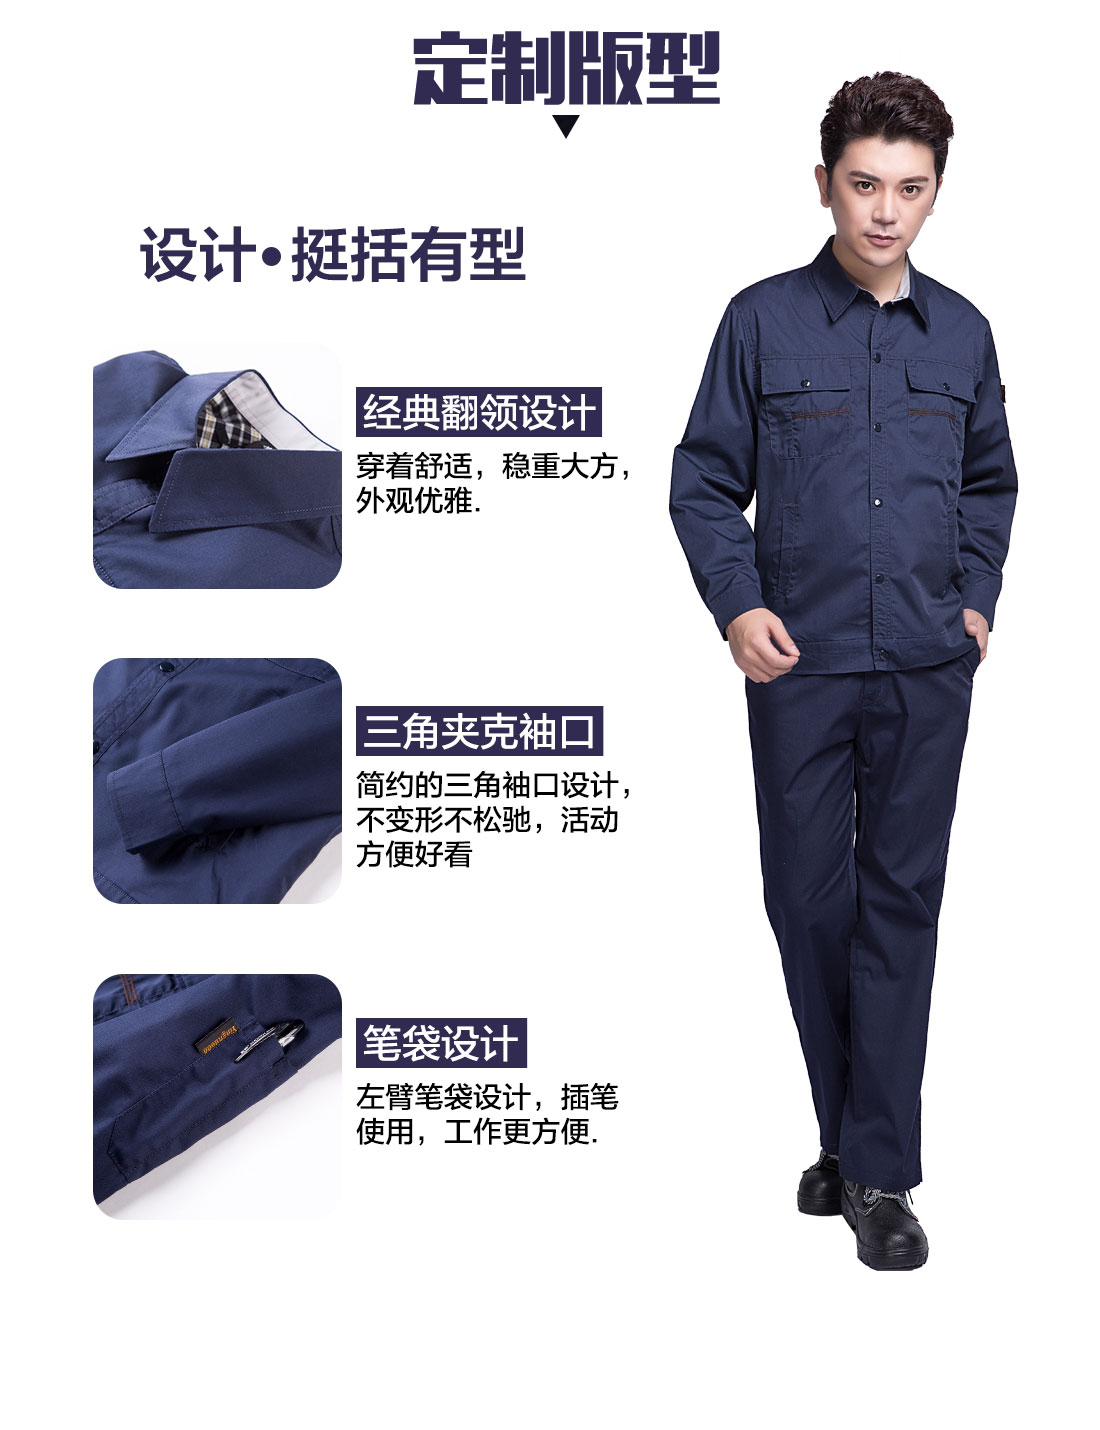 滨州工作服的3D立体版型设计